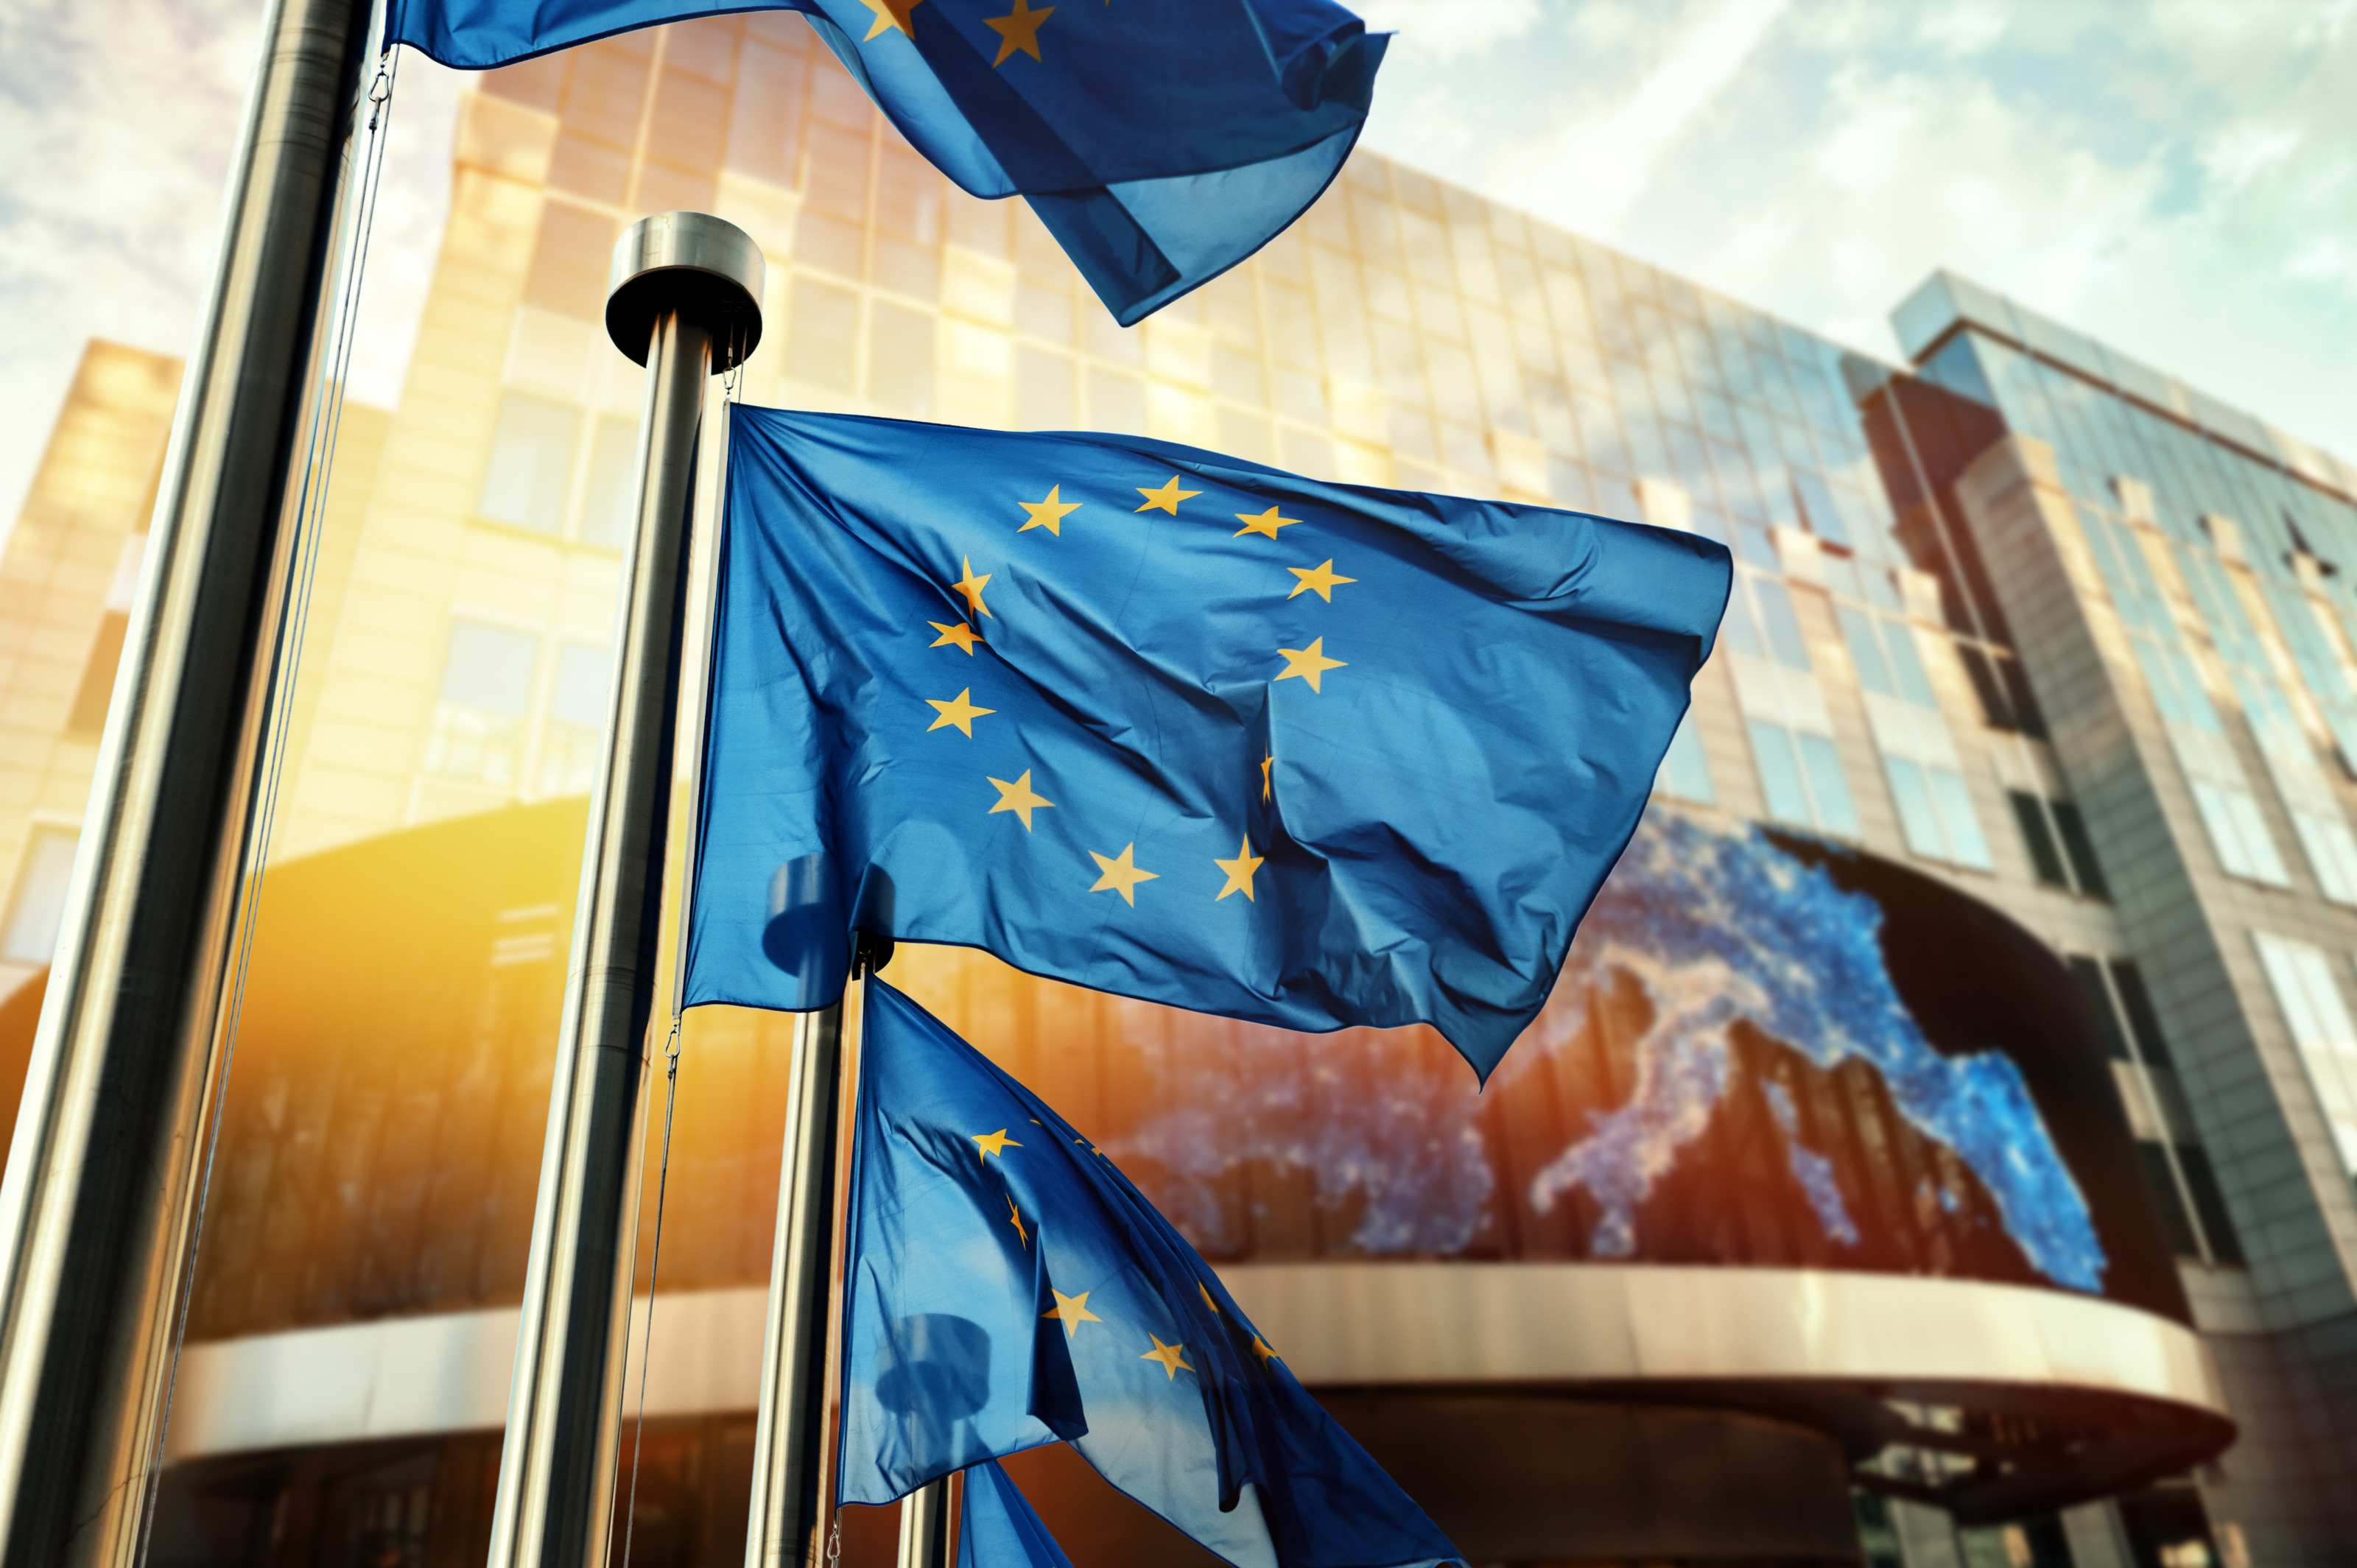 EU-Flagge in Wind wehen, im Hintergrund Glasfront eines Gebäudes